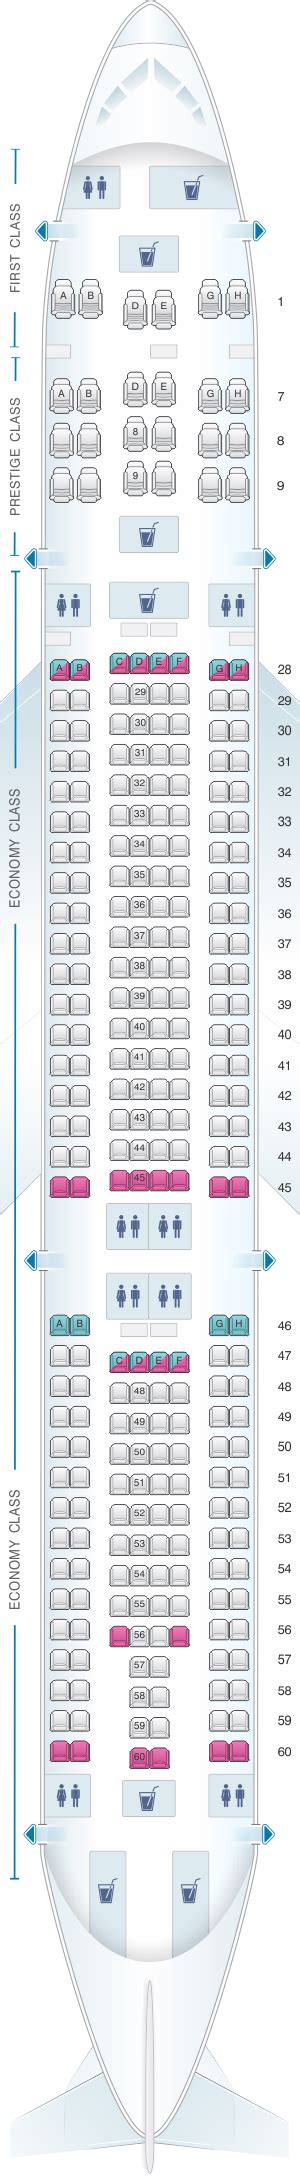 Seat Map Korean Air Airbus A330 300 276pax Seatmaestro